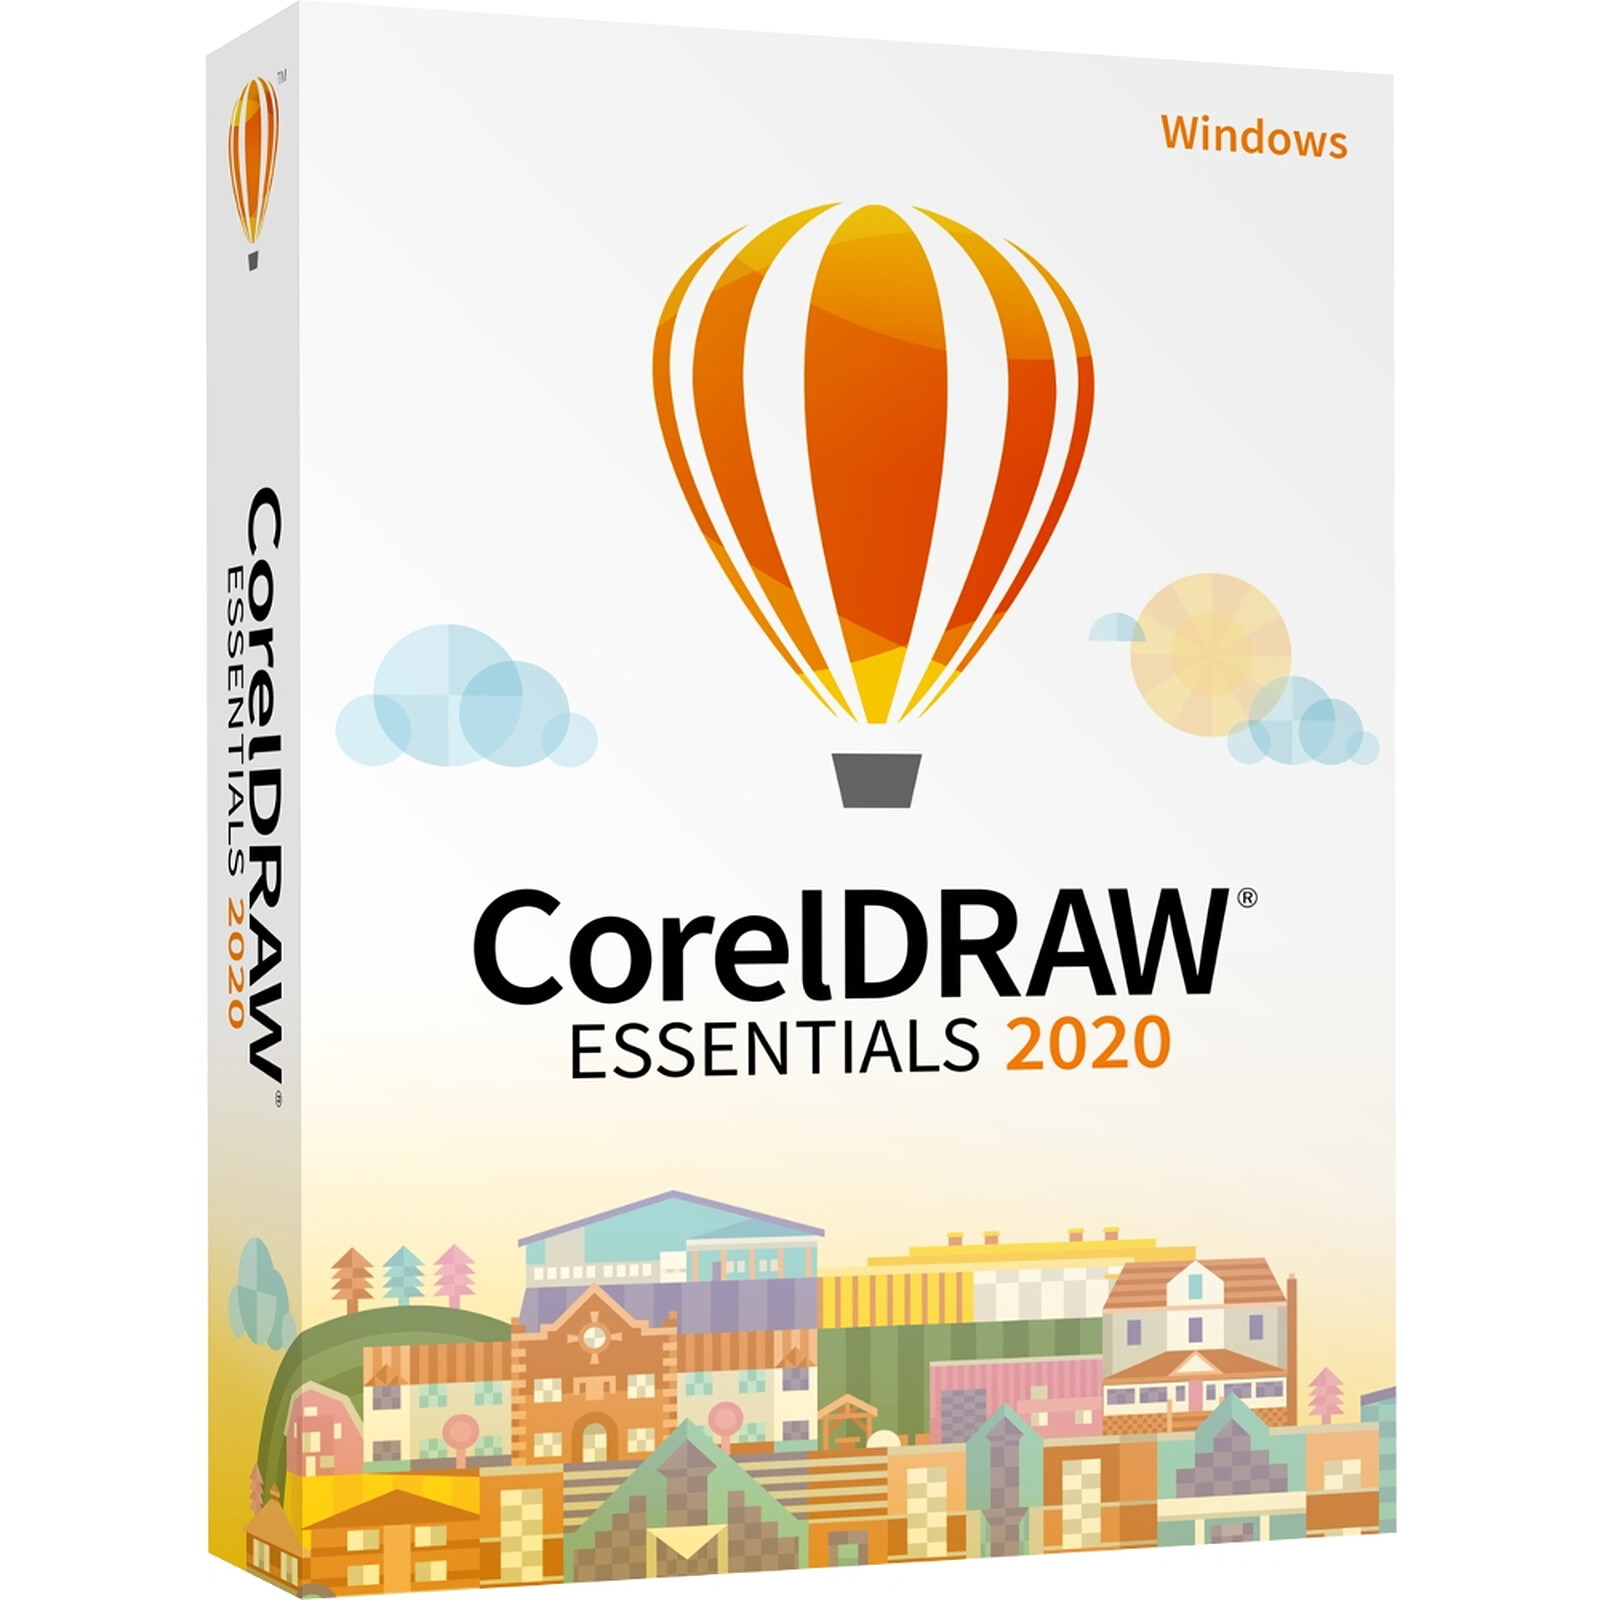 coreldraw essentials 2020 free download